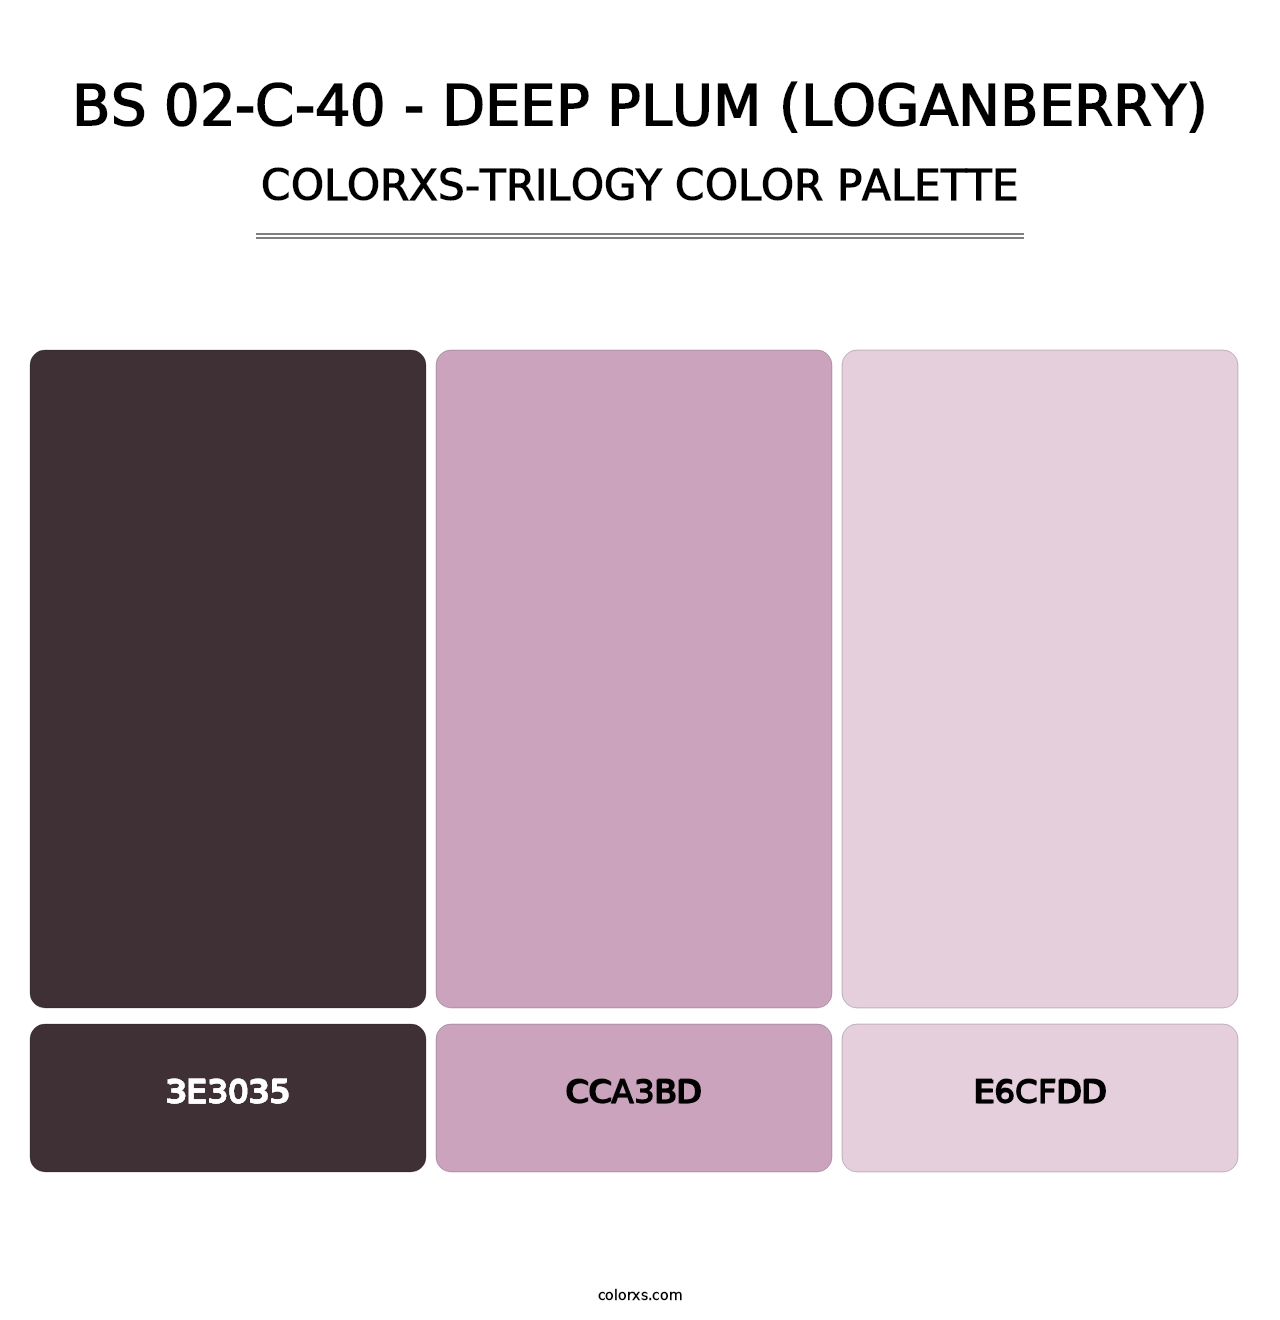 BS 02-C-40 - Deep Plum (Loganberry) - Colorxs Trilogy Palette